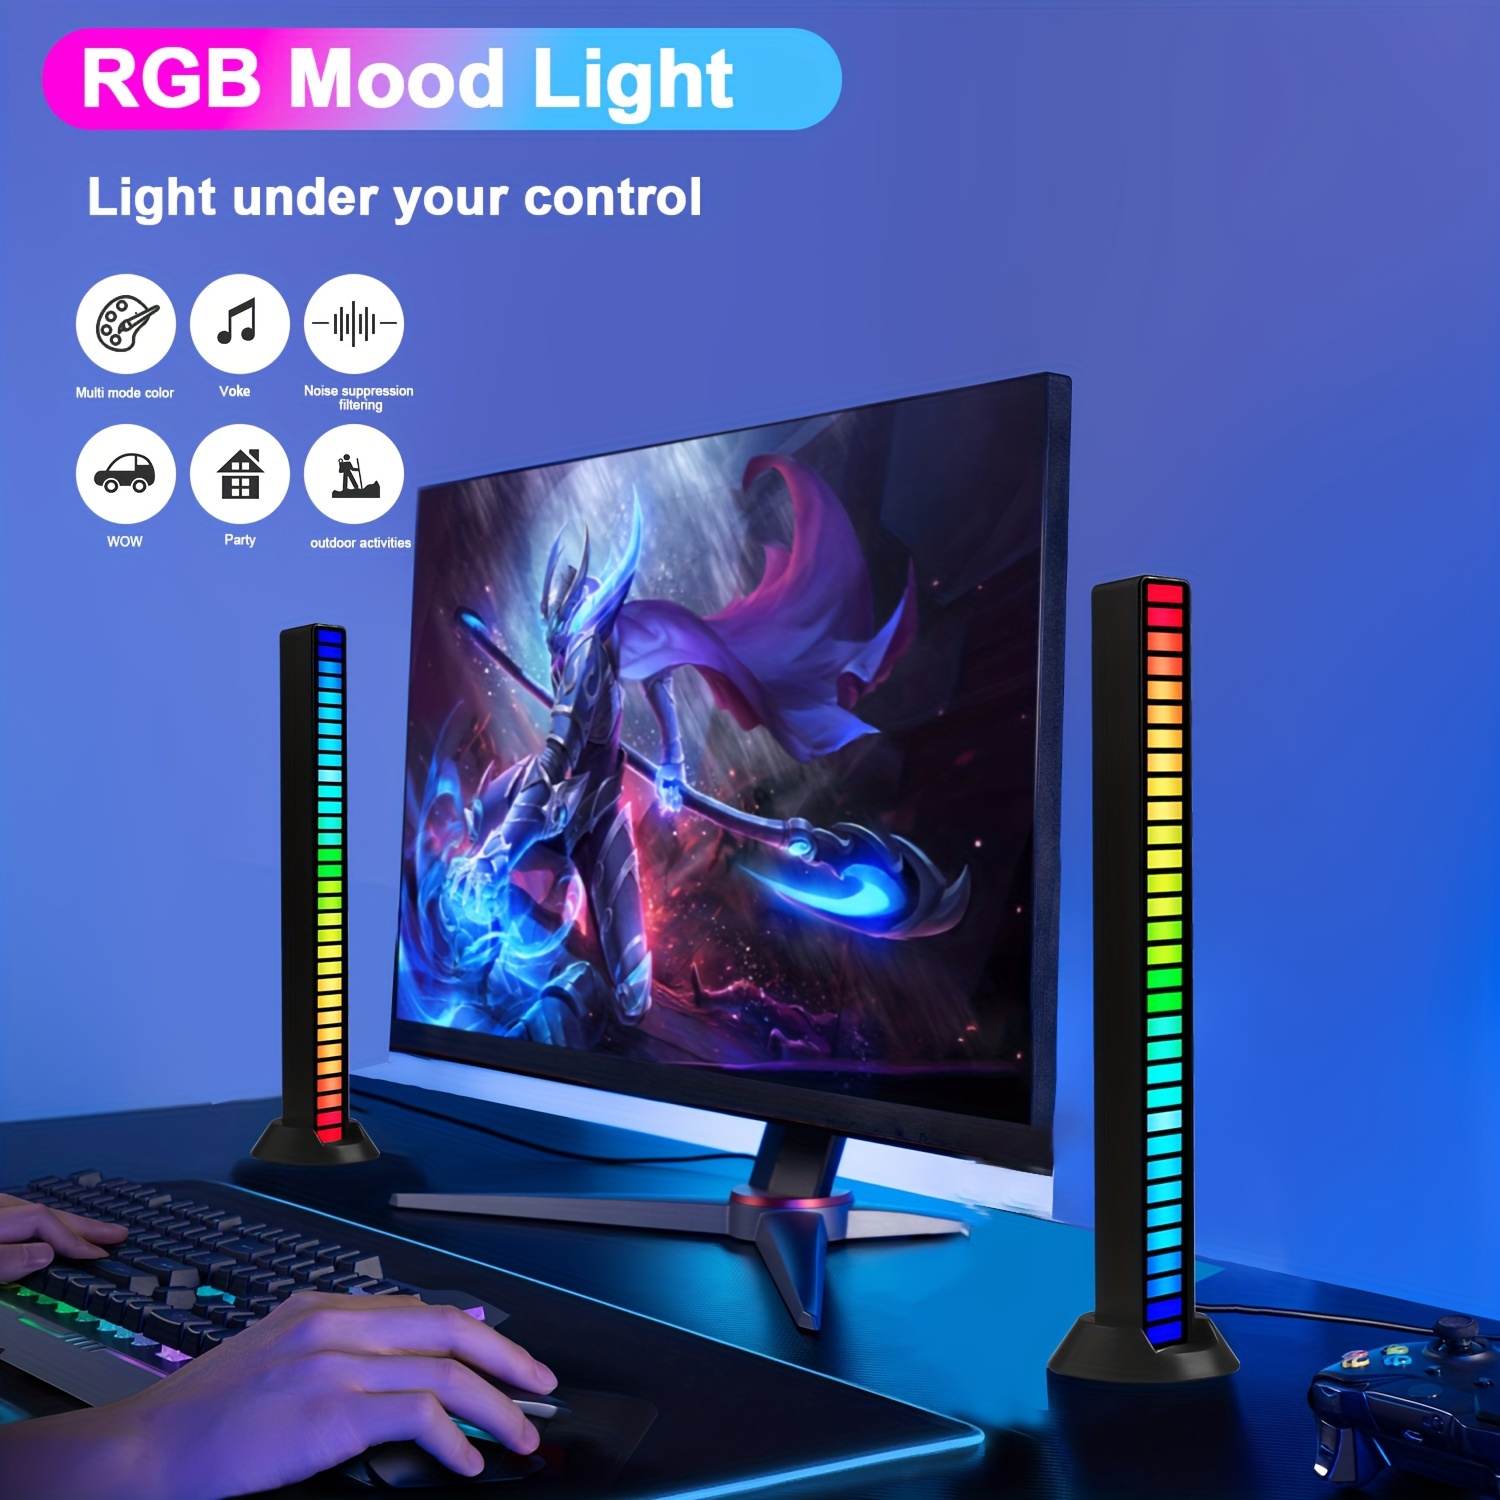 Lampe de bureau style gamer à bandes lumineuses LED et capteur de rythme 